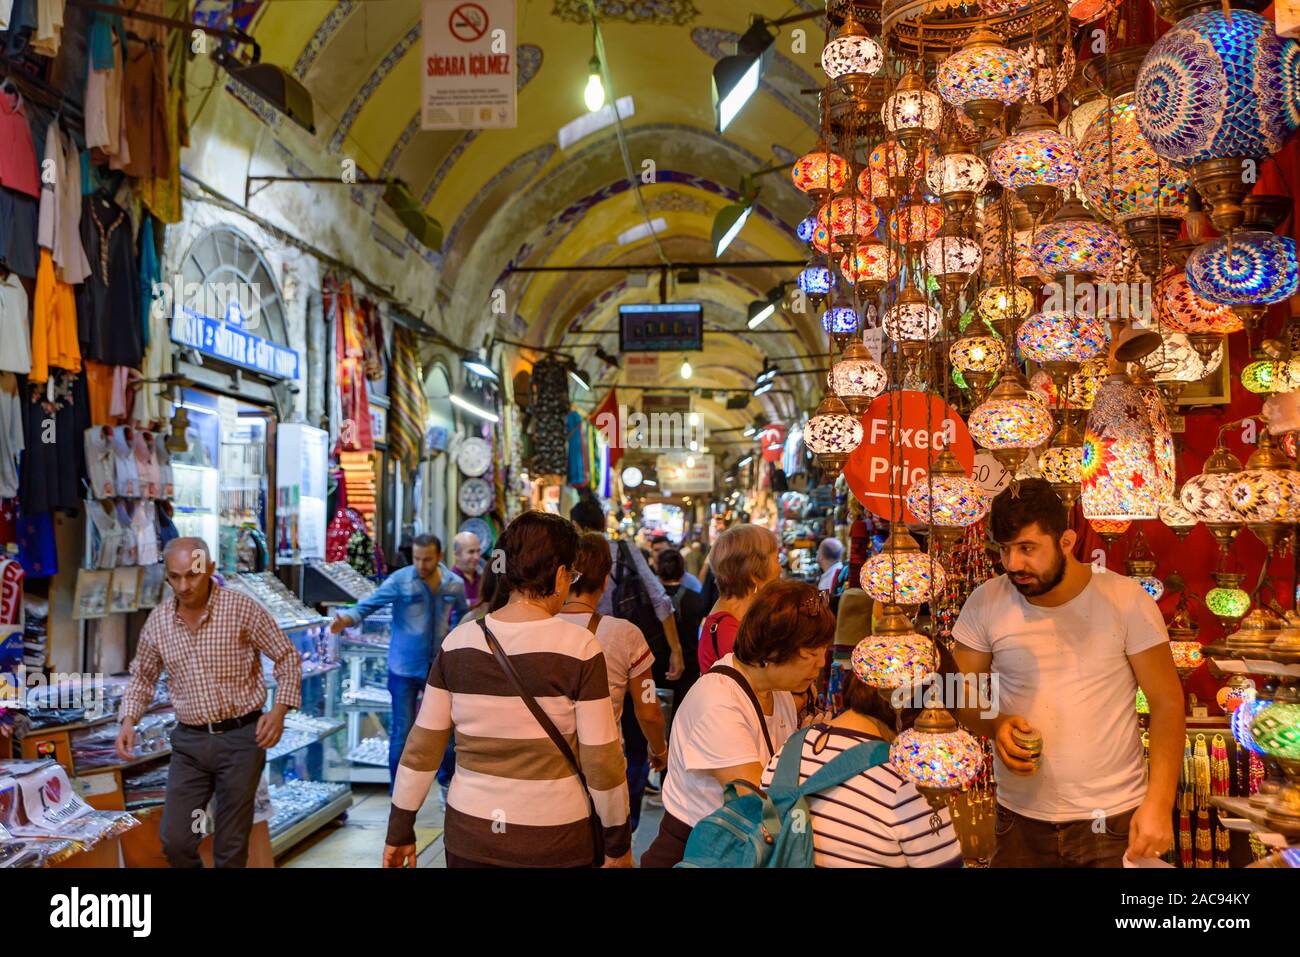 Das türkische Mosaik Lampe/Osmanischen licht Geschäfte innerhalb der Große Basar in Istanbul, Türkei, eine der größten und ältesten überdachten Märkte der Welt Stockfoto